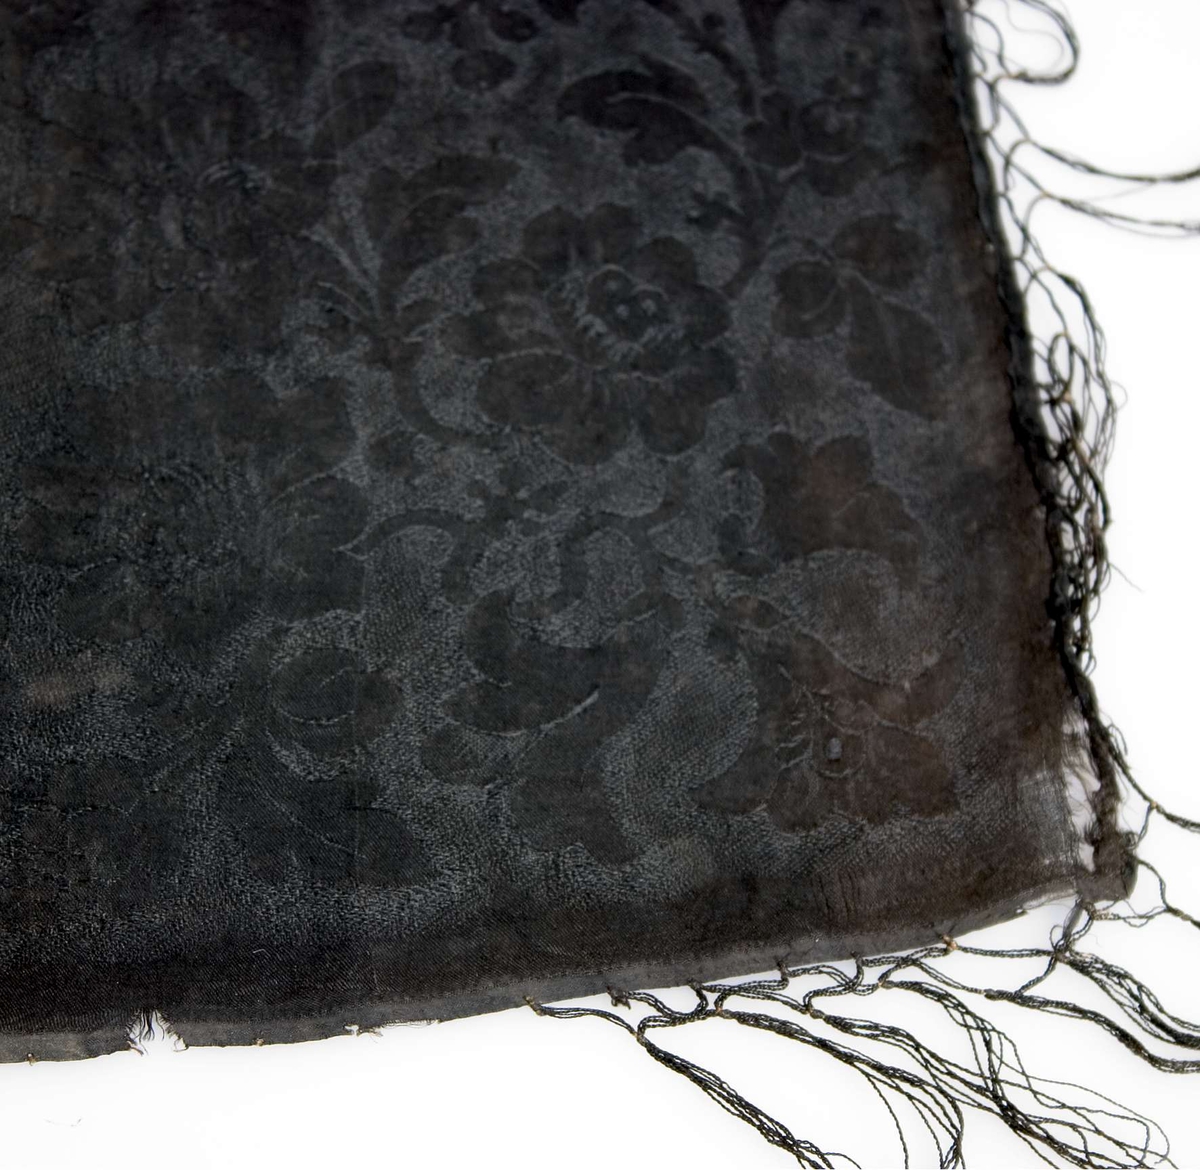 Huvudkläde av svart mönstervävt siden. Blommönster över hela ytan. Svarta iknutna silkefransar. Fållad för hand i två sidor.